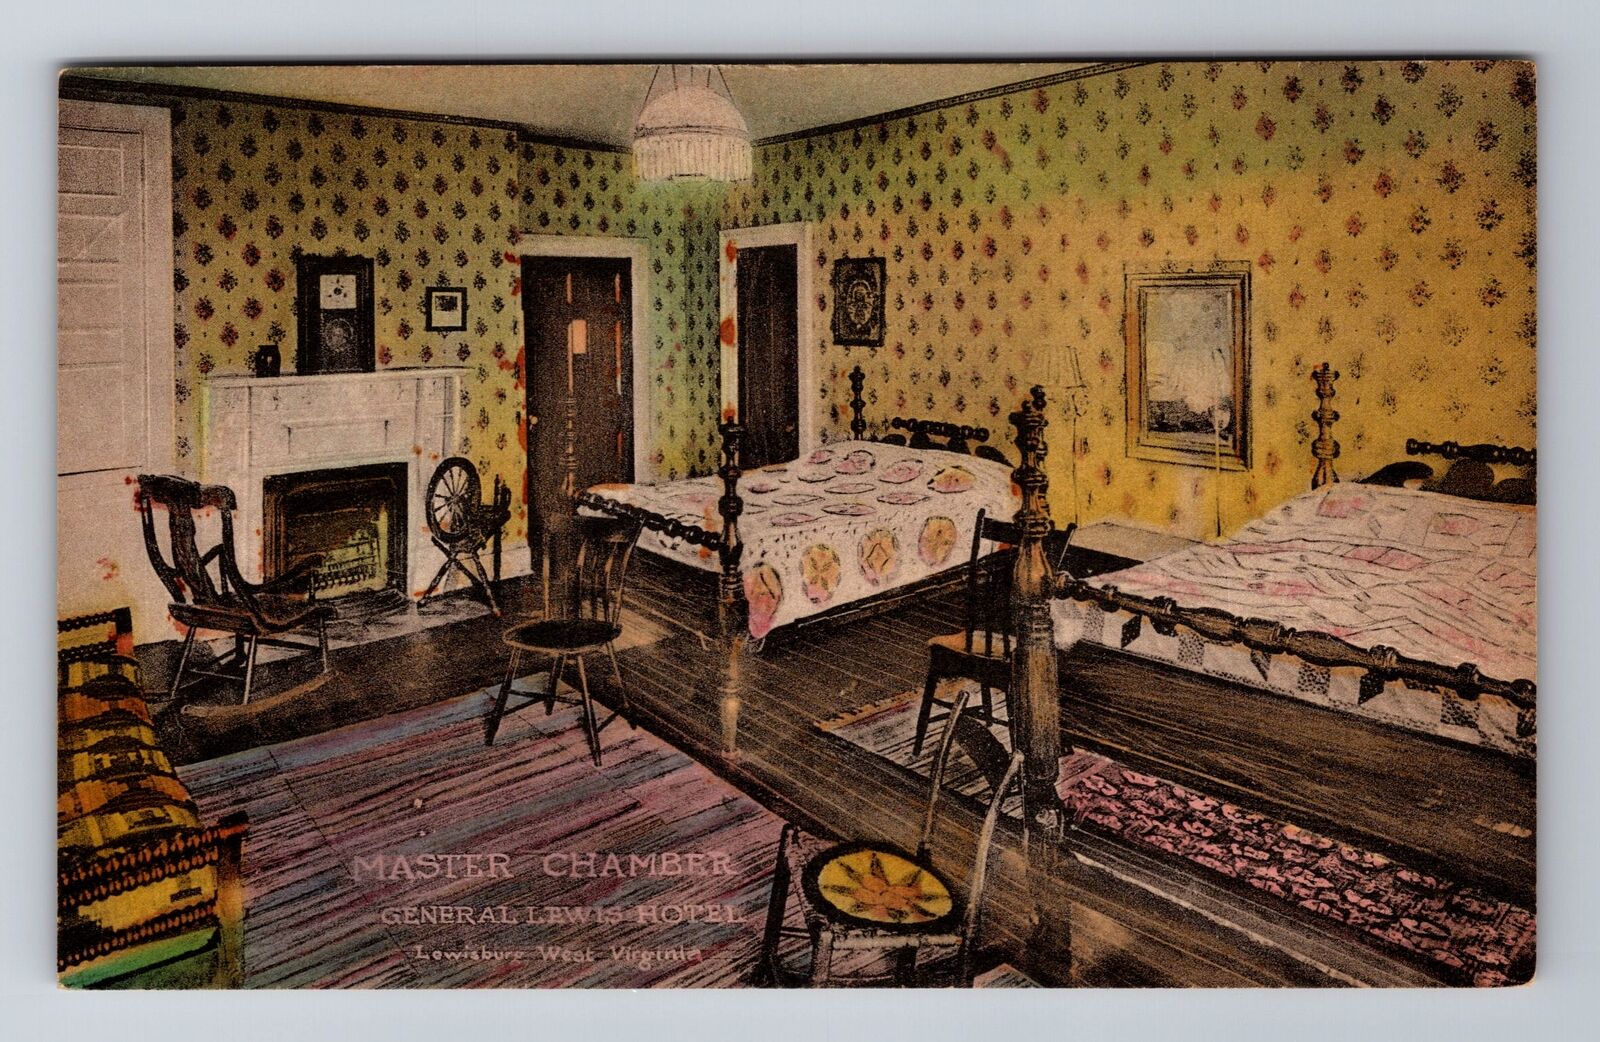 Lewisburg WV-West Virginia, General Lewis Hotel Master Chamber, Vintage Postcard